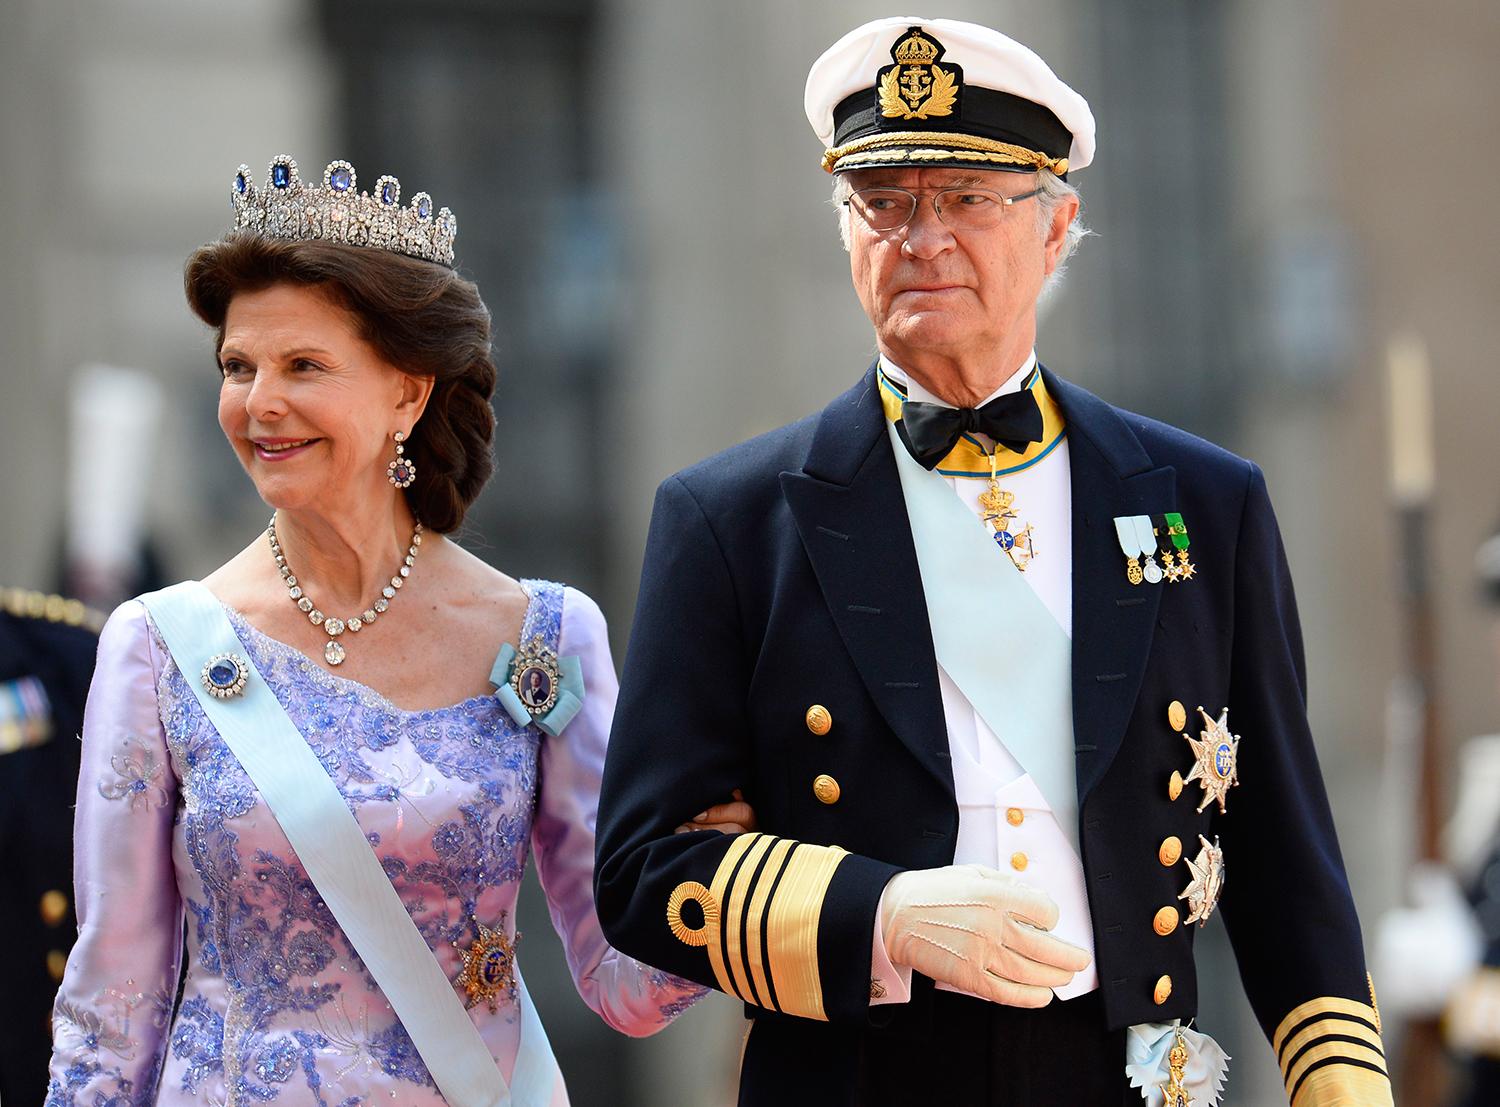 Några som också heter Bernadotte är kungen och drottningen.